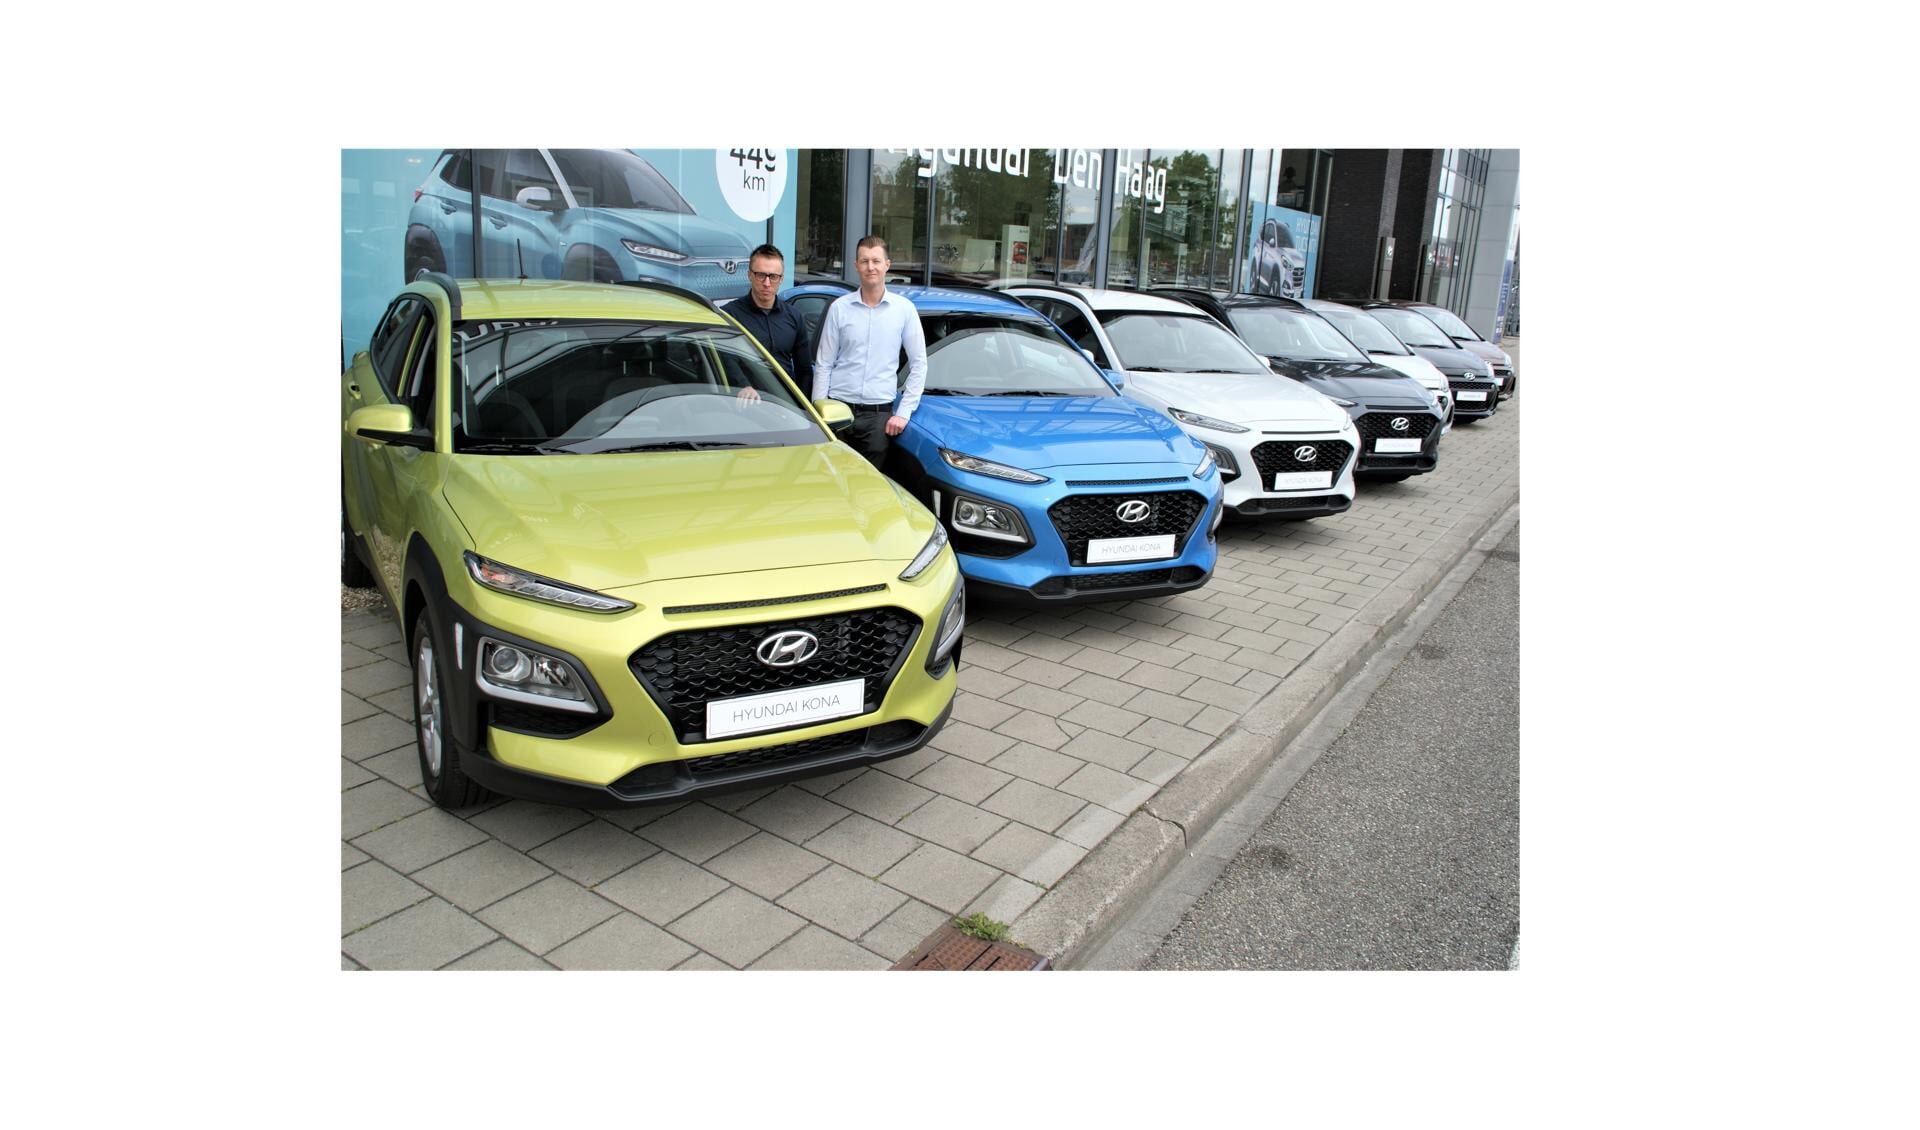 De verkoopadviseurs Patrick van Oosterhout en Kevin van Zandvliet bij de serie Hyundai’s I10 en KONA.